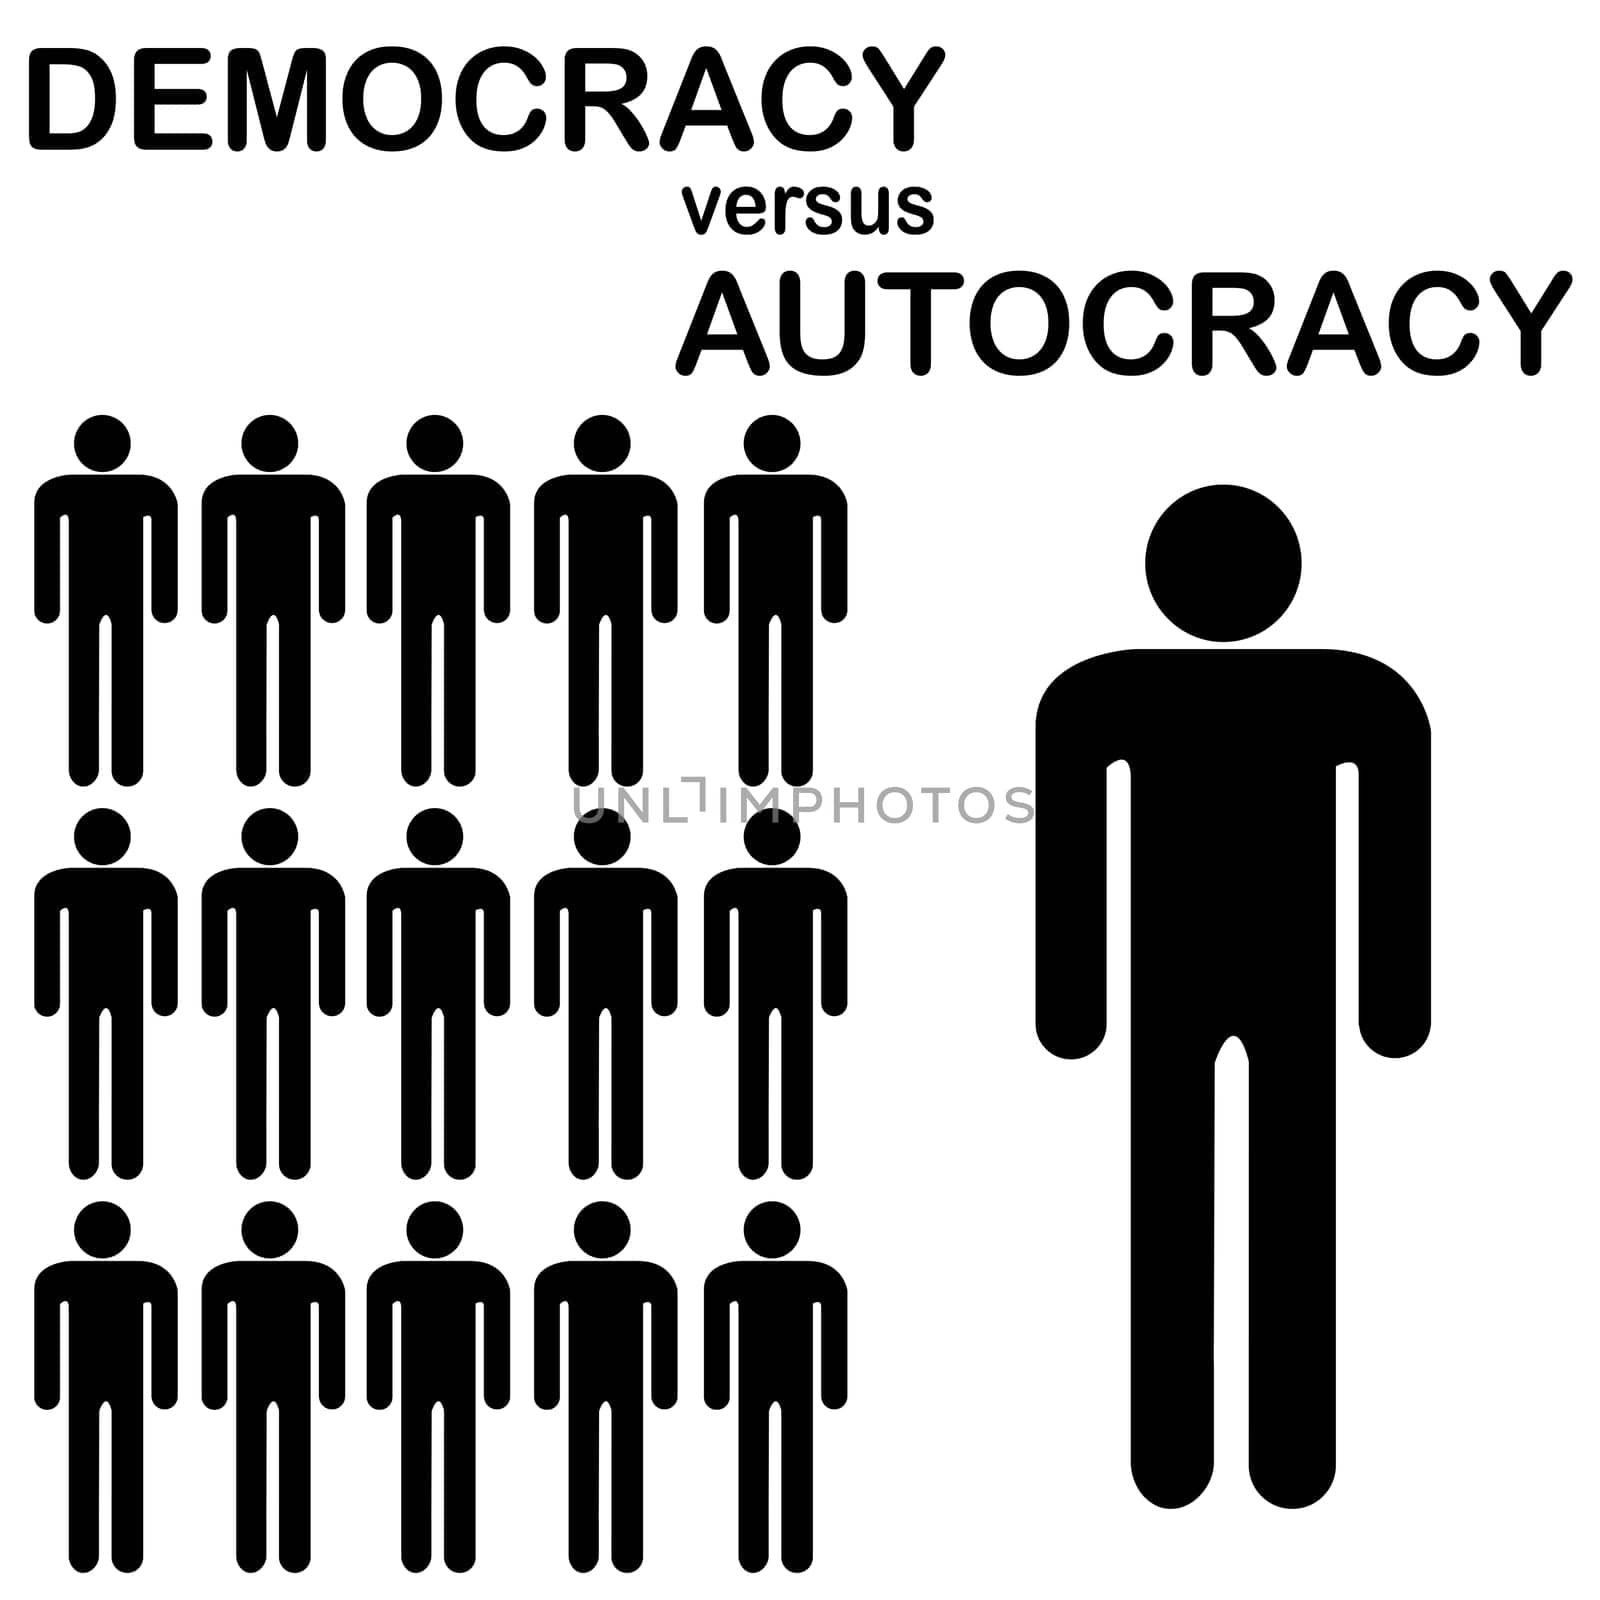 Democracy versus Autocracy, abstract concept by hibrida13